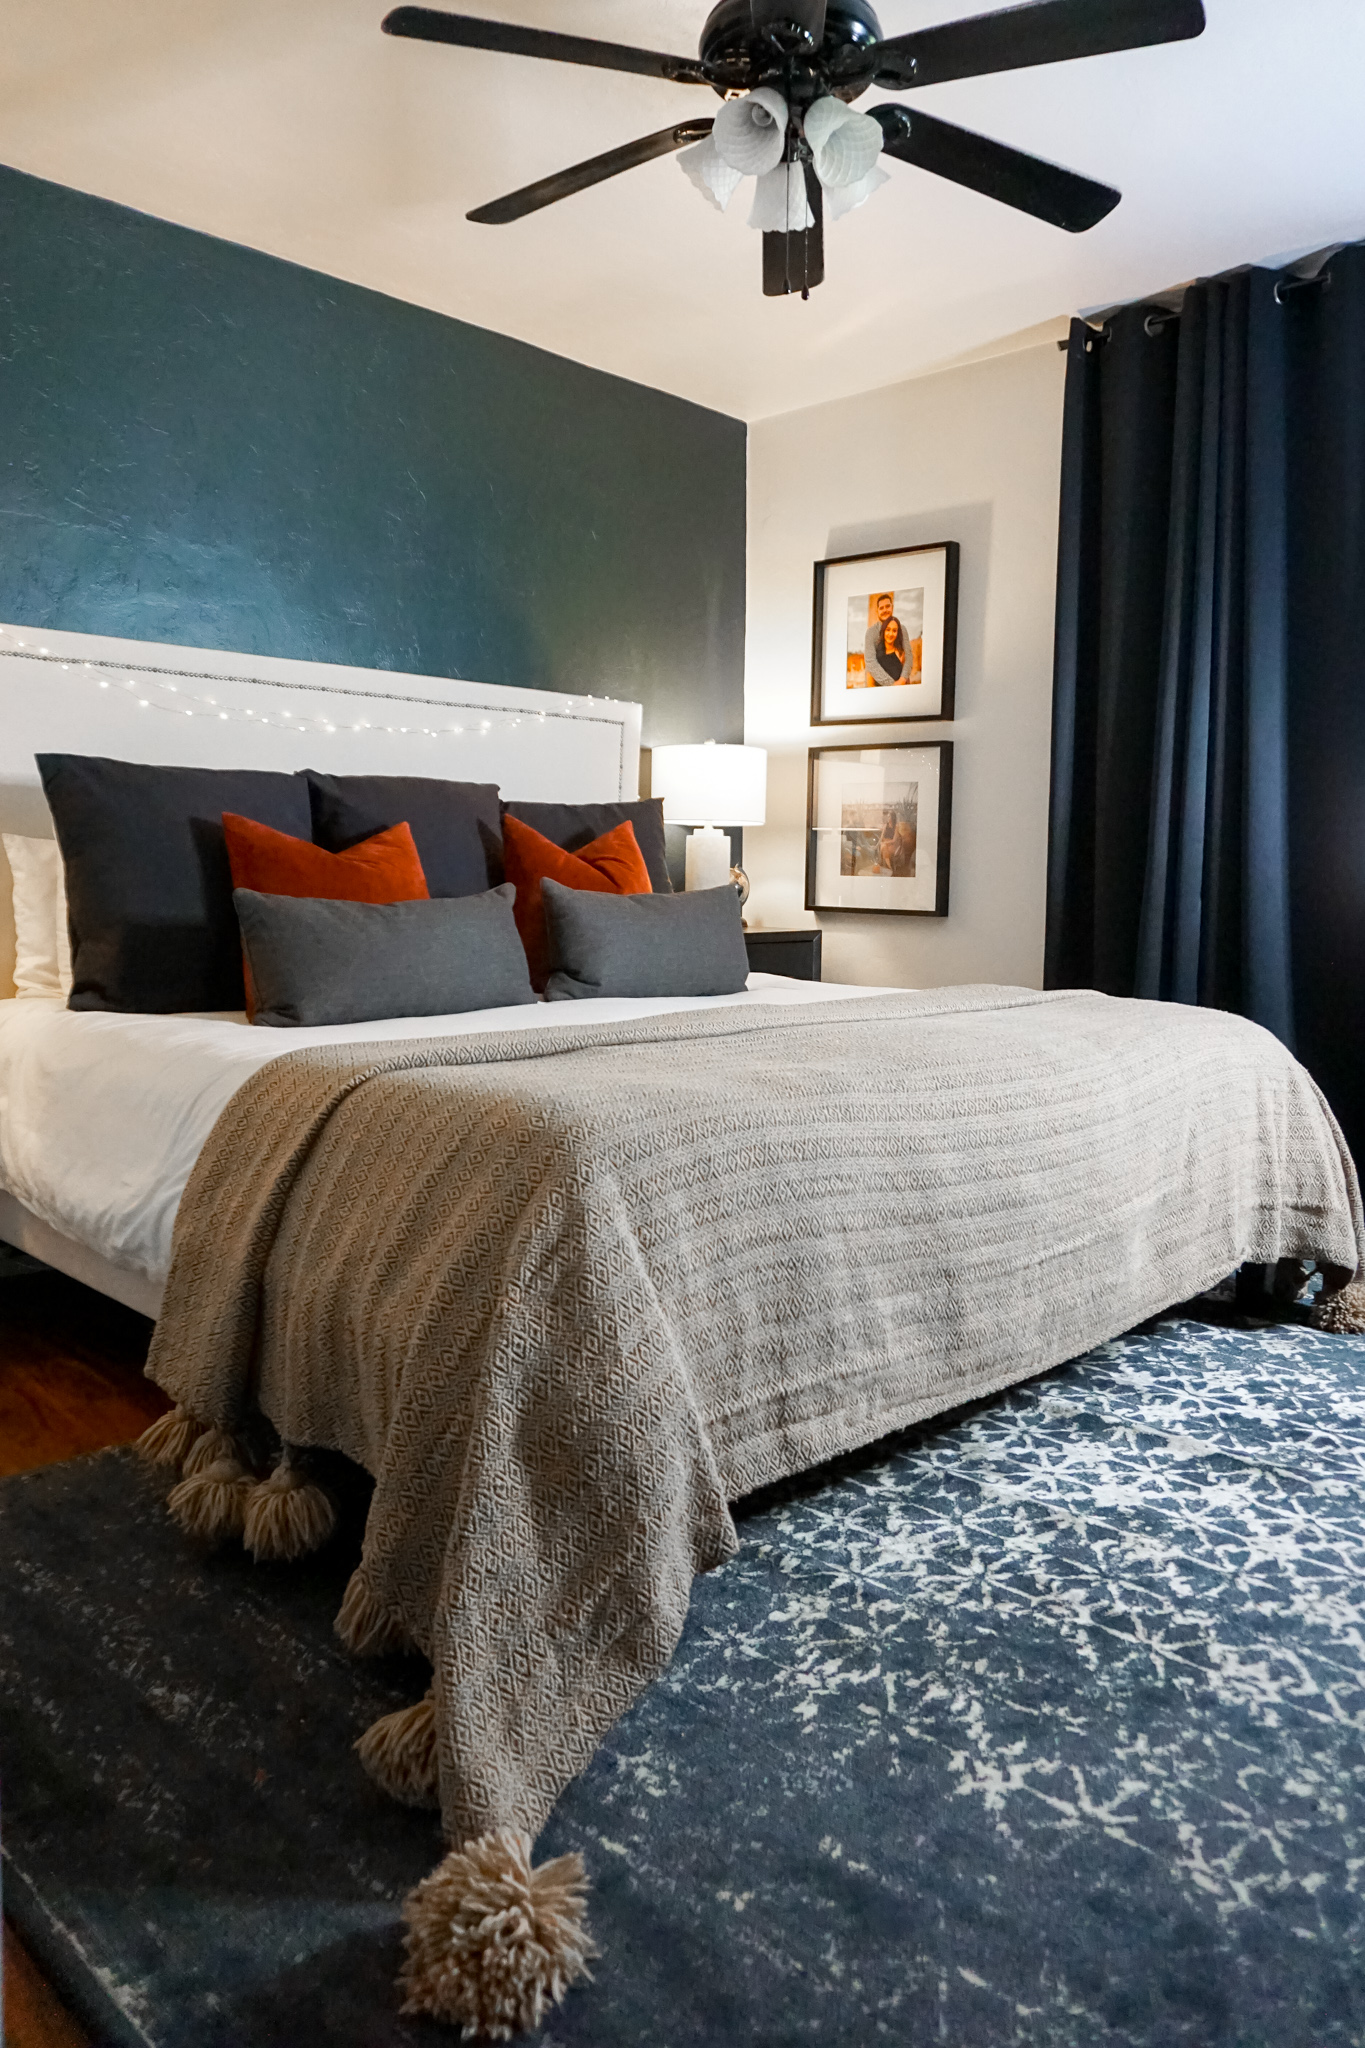 Our Master Bedroom Decor and DIY Upholstered Bed Frame- Monique McHugh Blog